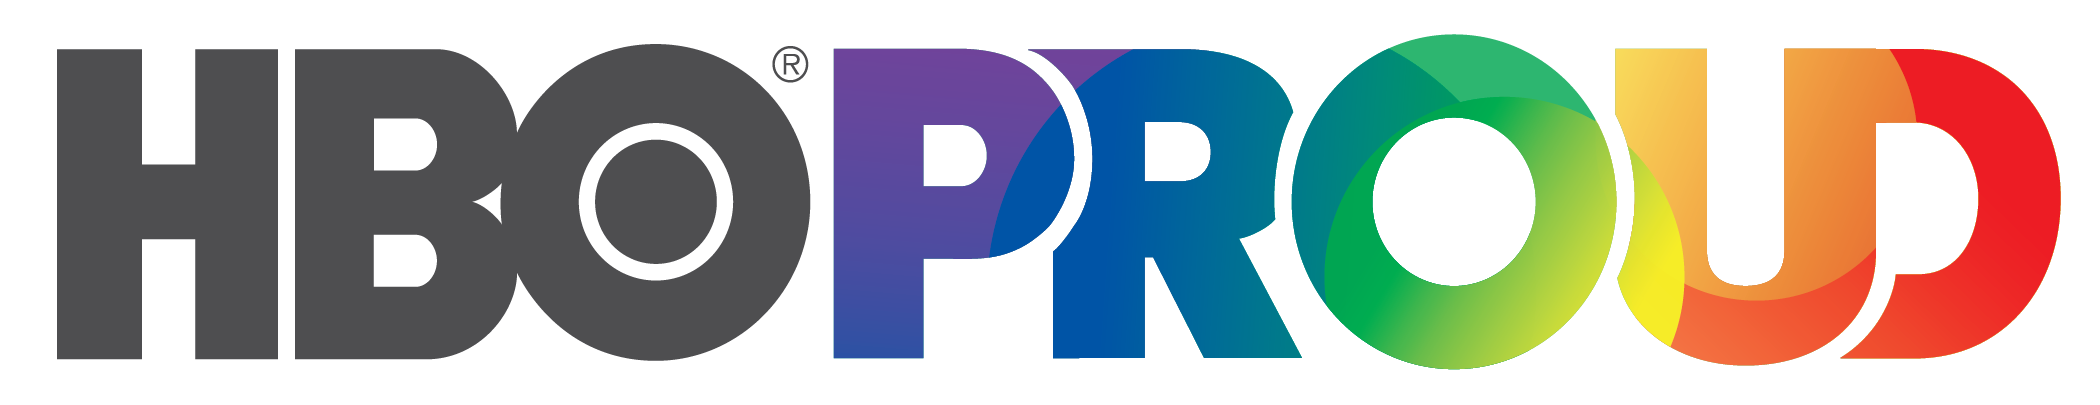 AT&T Pride Microsite - Logo: HBO PROUD